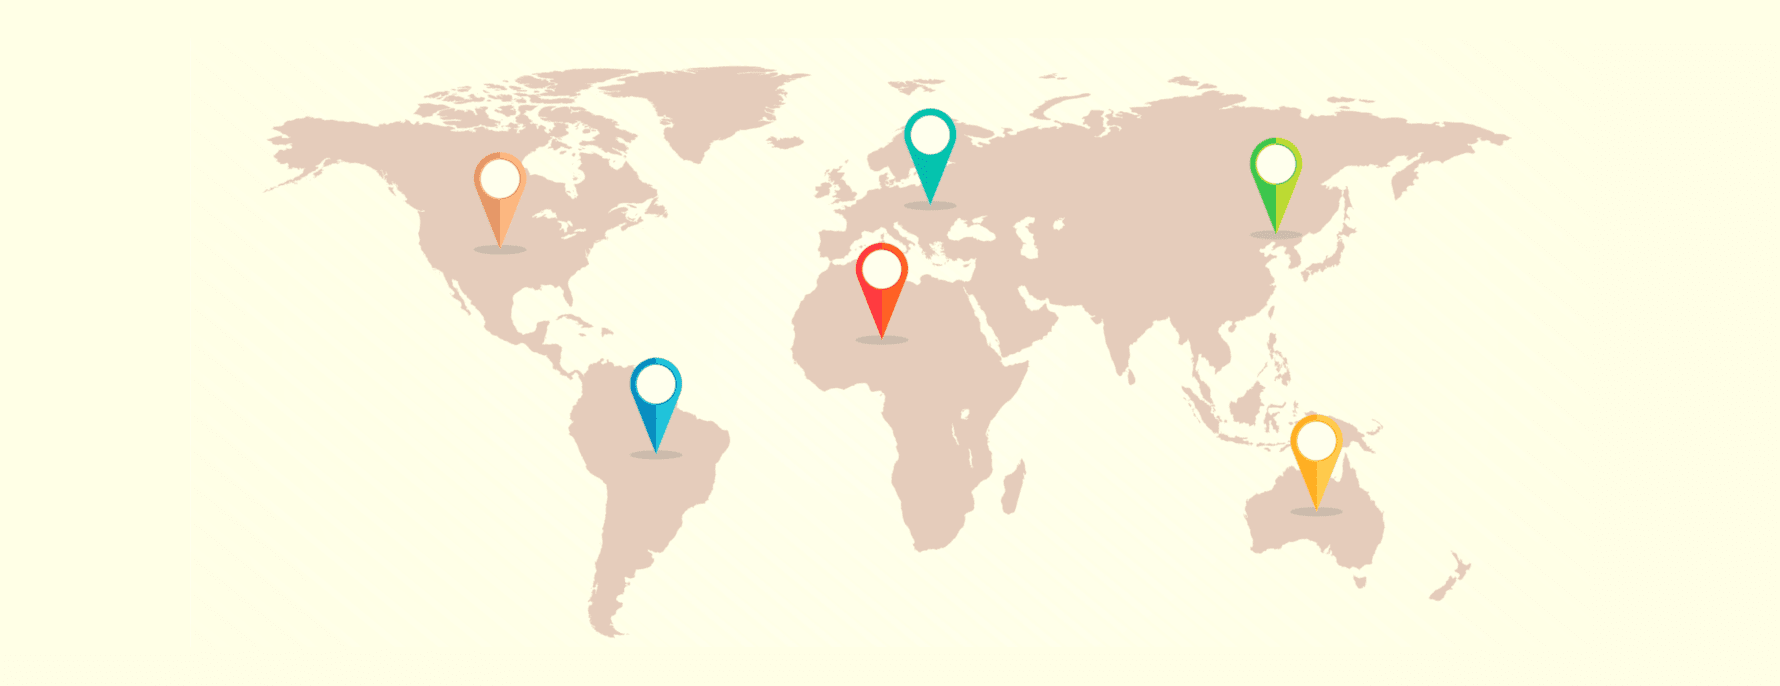 En världskarta som visar olika VPN-jurisdiktioner